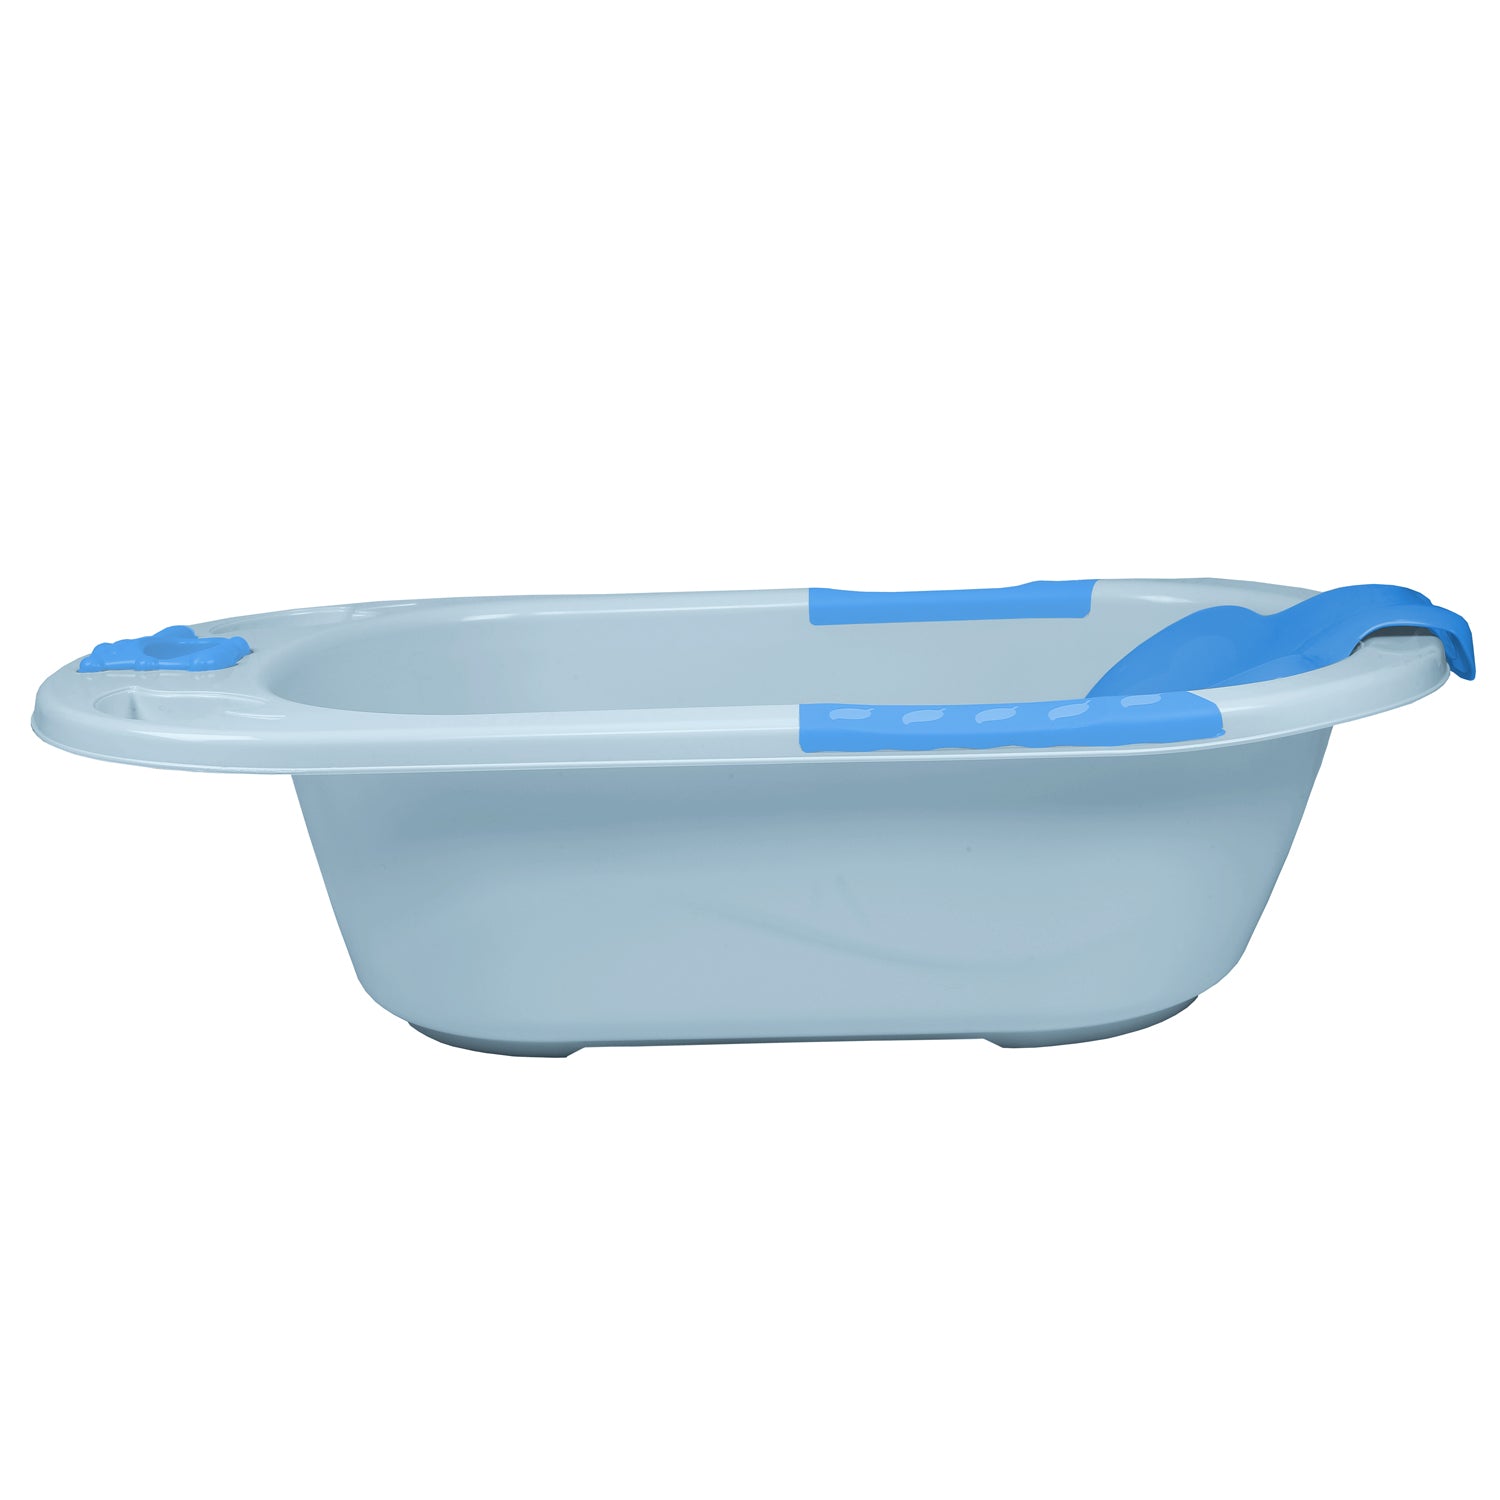 Blue Bath Tub With Bather - Baby Moo